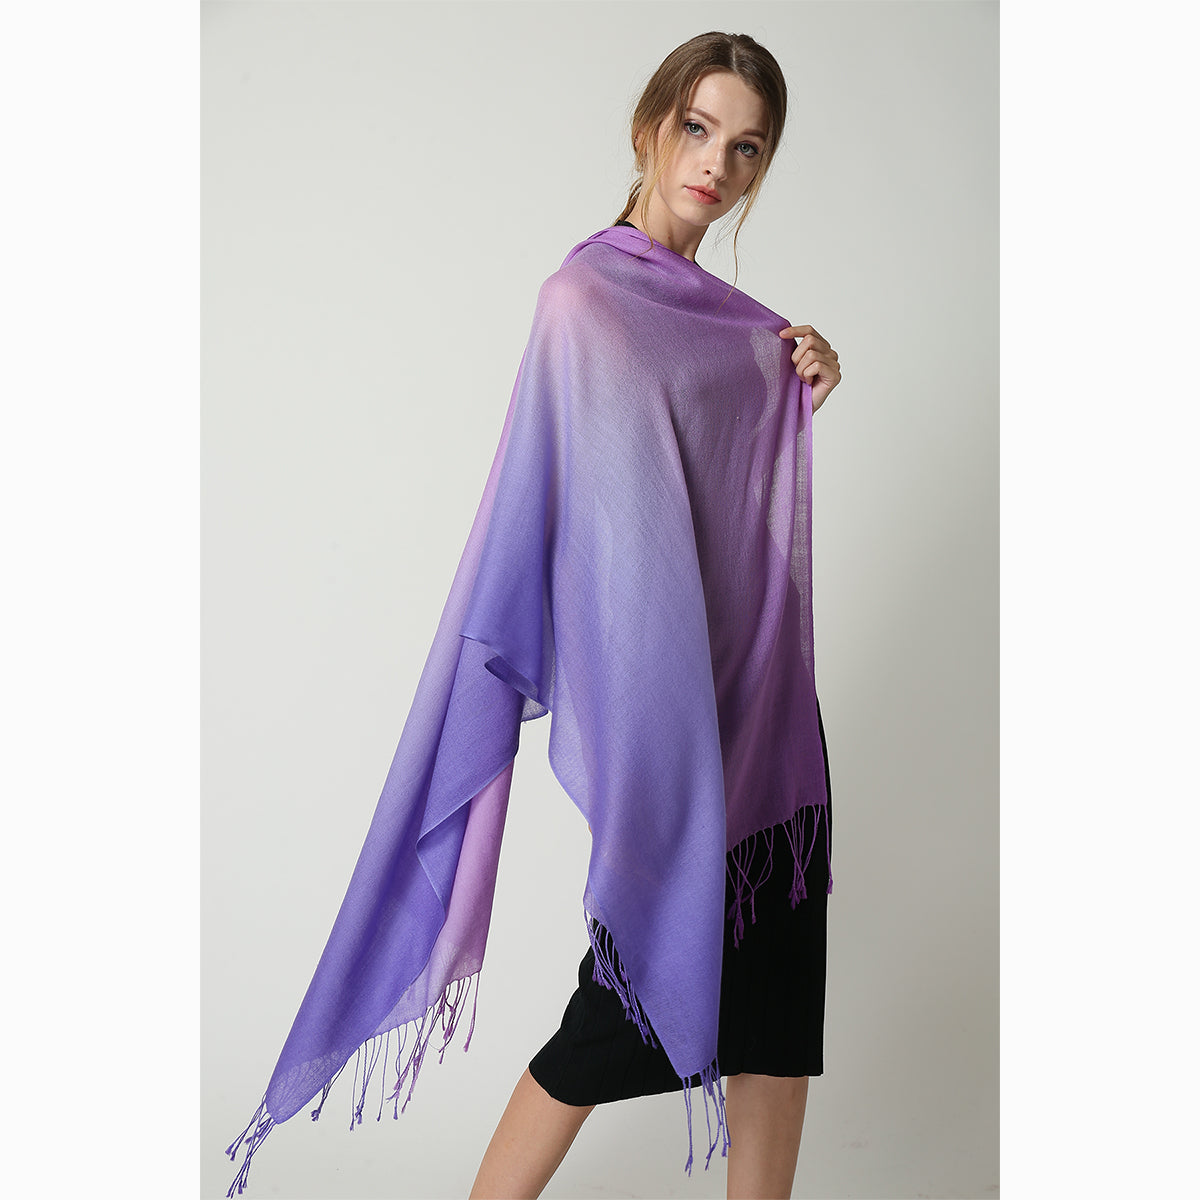 Ugg 100% Merino Wool Tie Dye Scarf Purple and Lavanda-Scarves-PEROZ Accessories